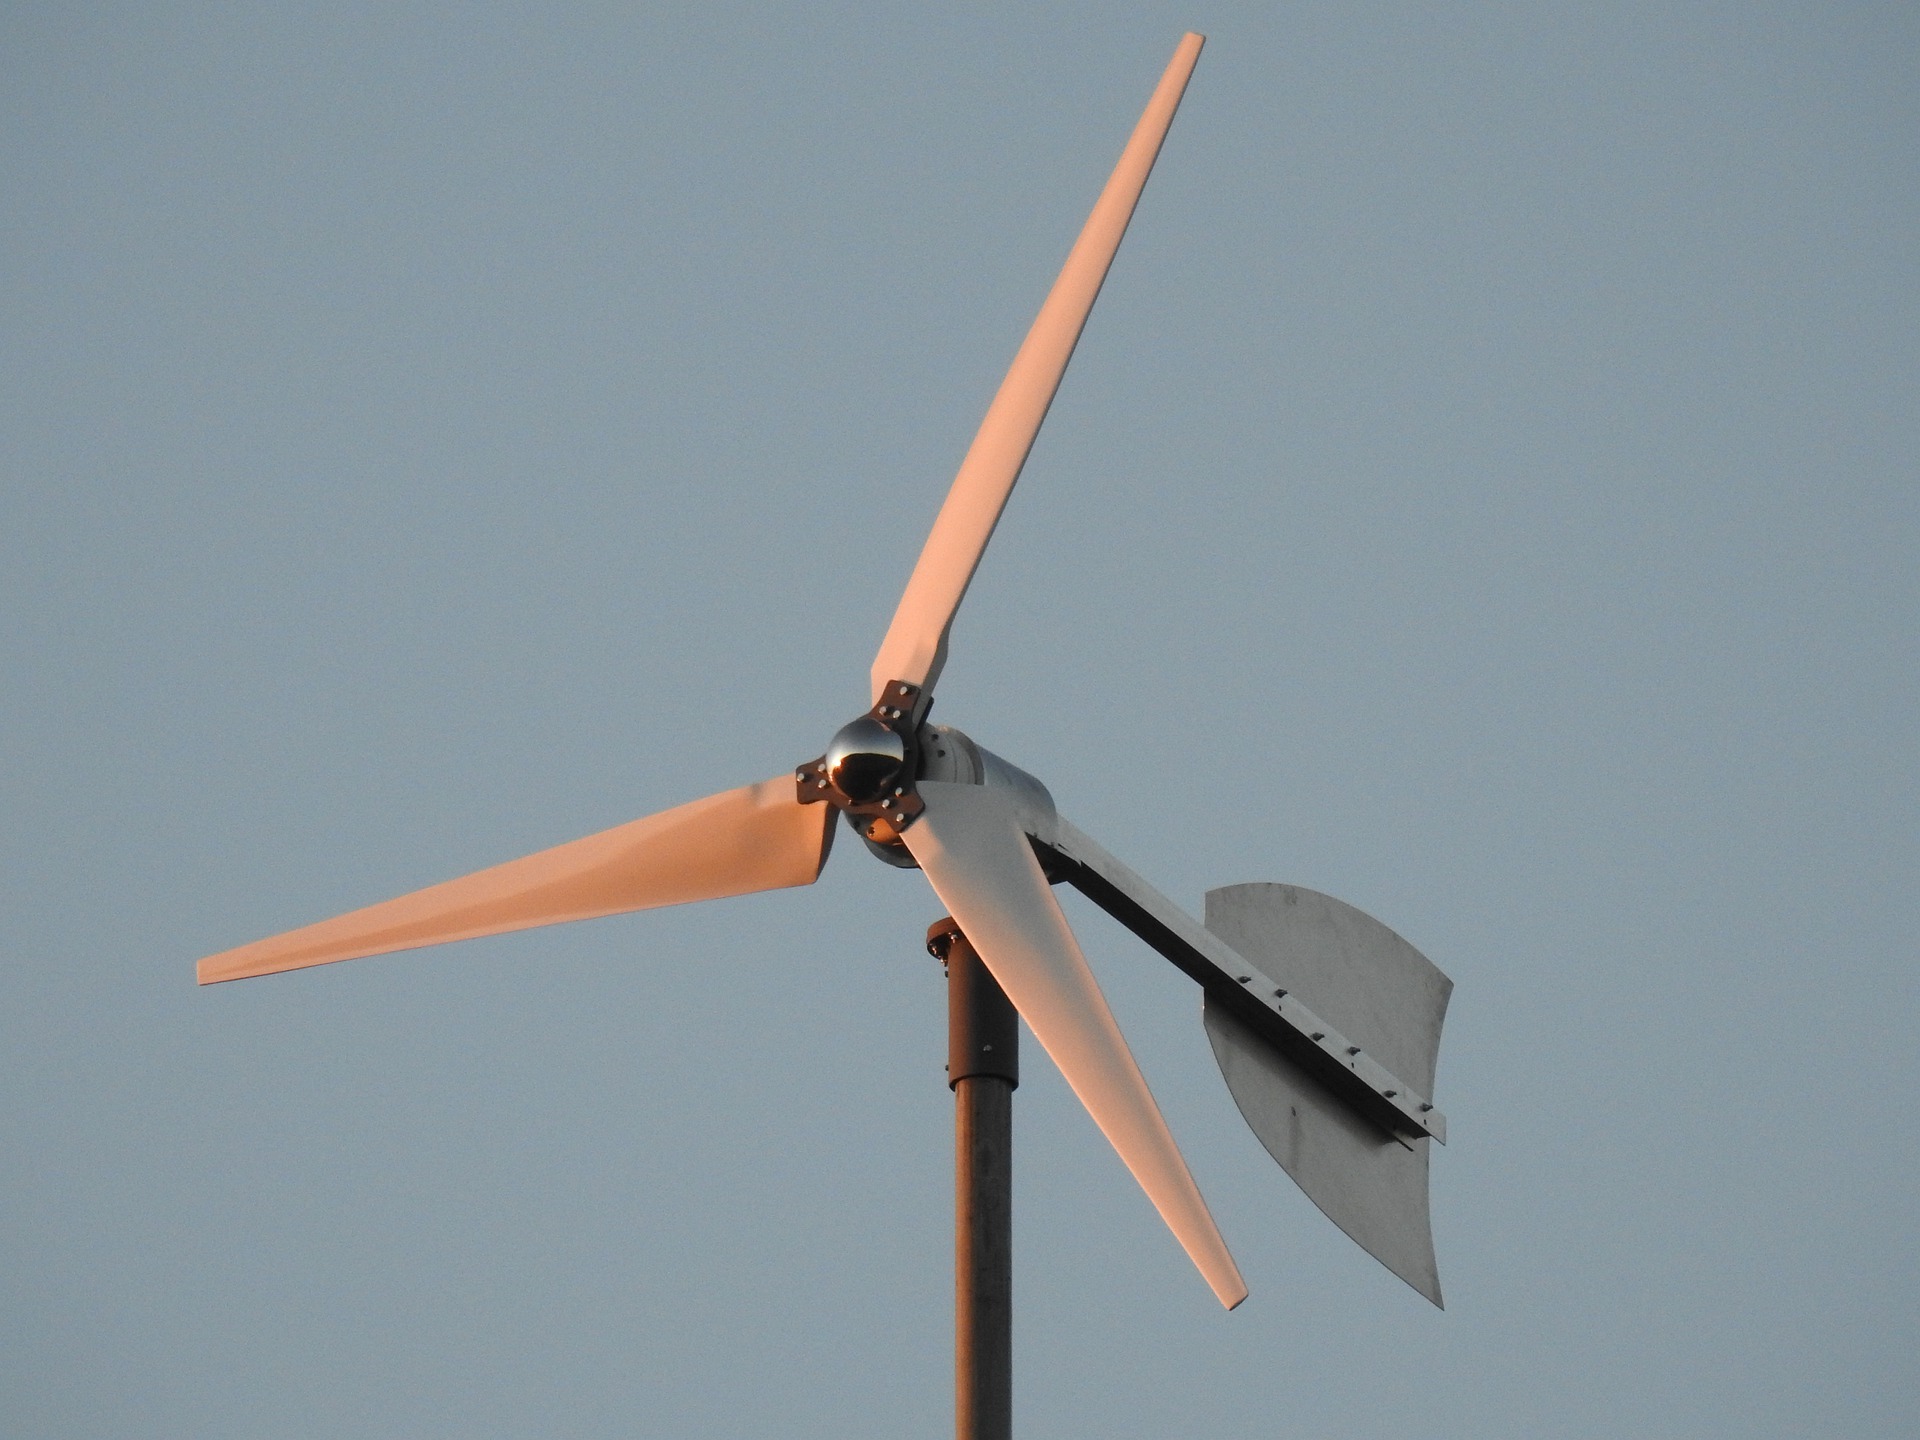 Installer une éolienne domestique : un projet rentable ?